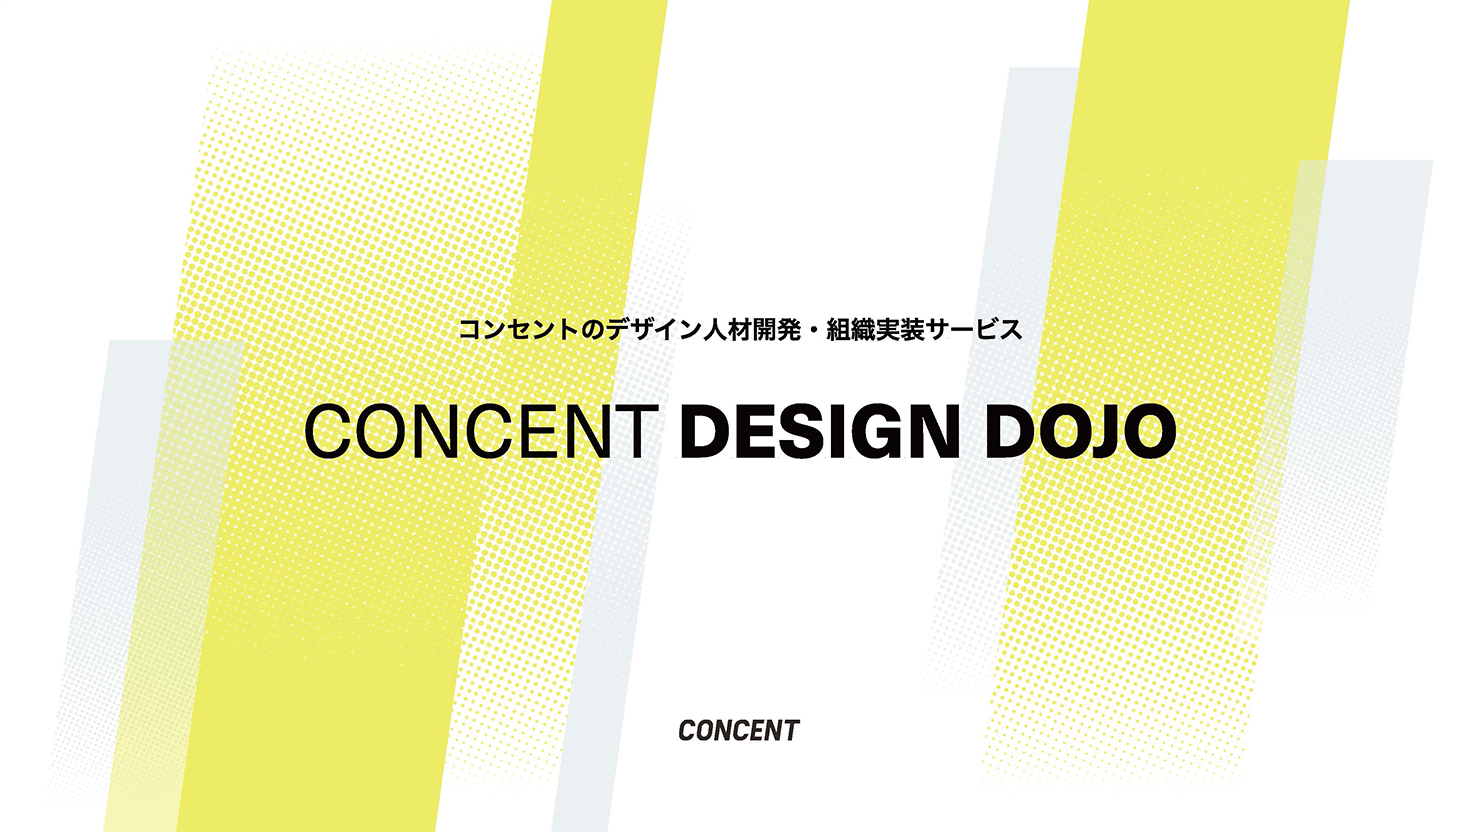 コンセントのデザイン人材開発・組織実装サービス「CONCENT DESIGN DOJO」 の表紙画像。